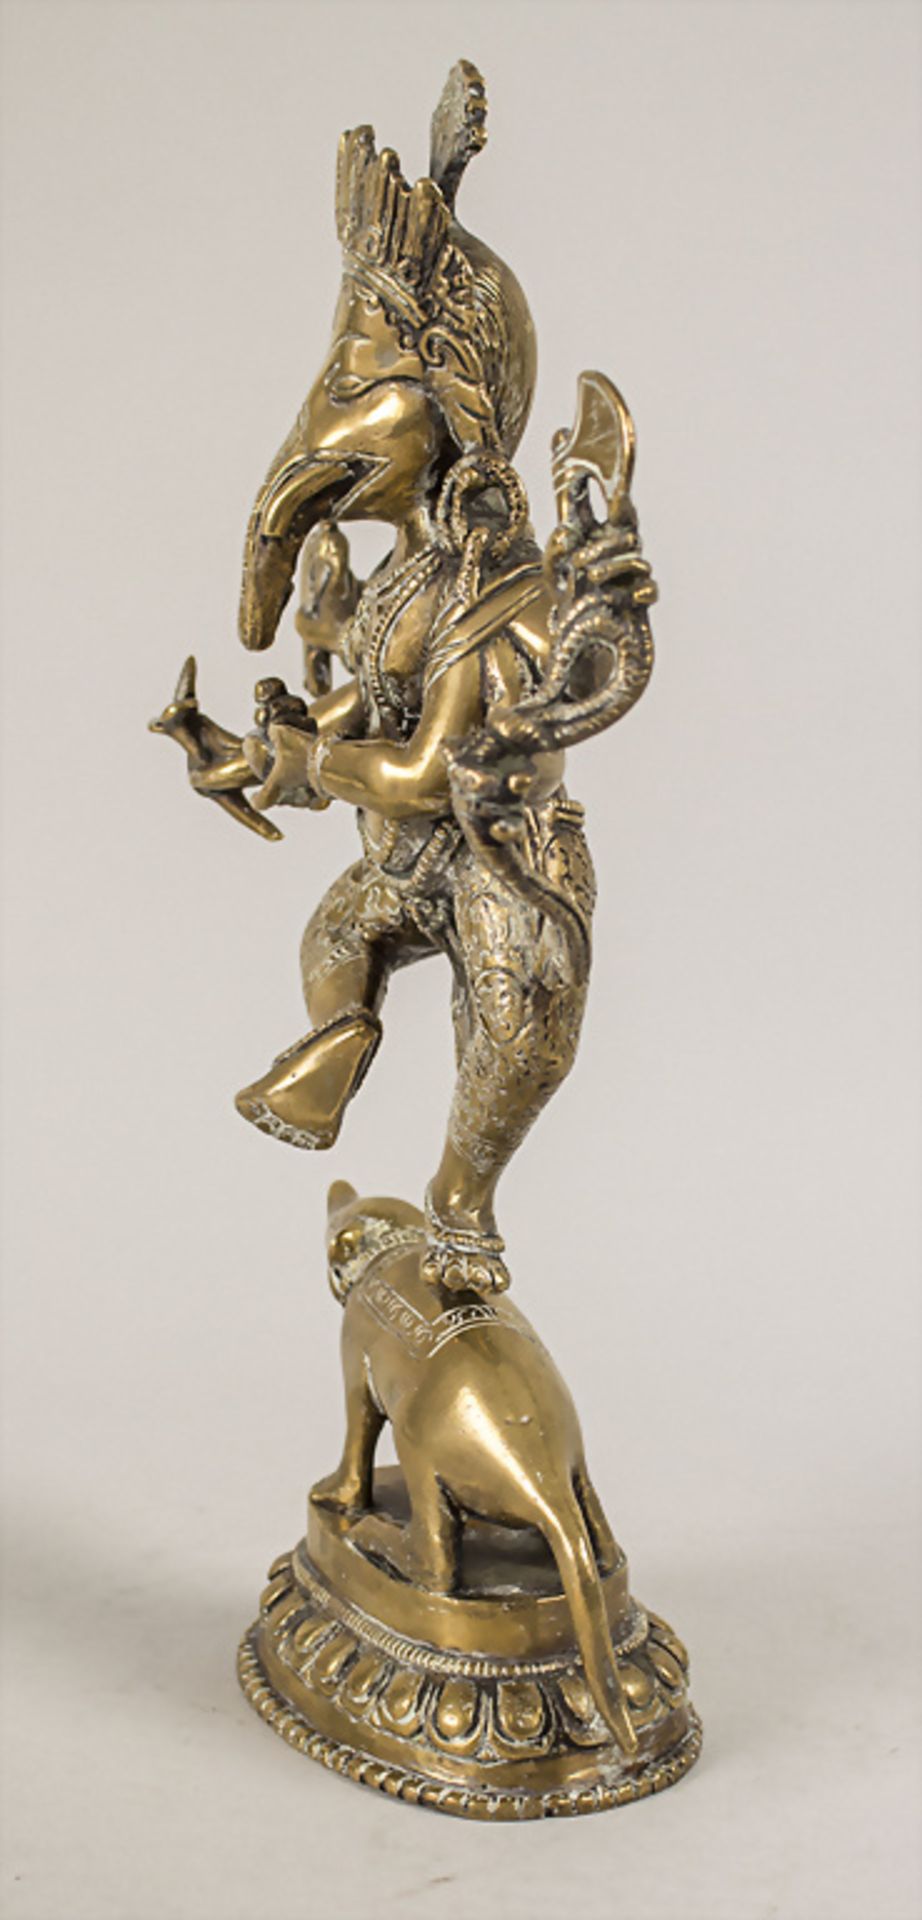 Ganesha auf Ratte, Indien, 18./19. Jh. - Image 4 of 6